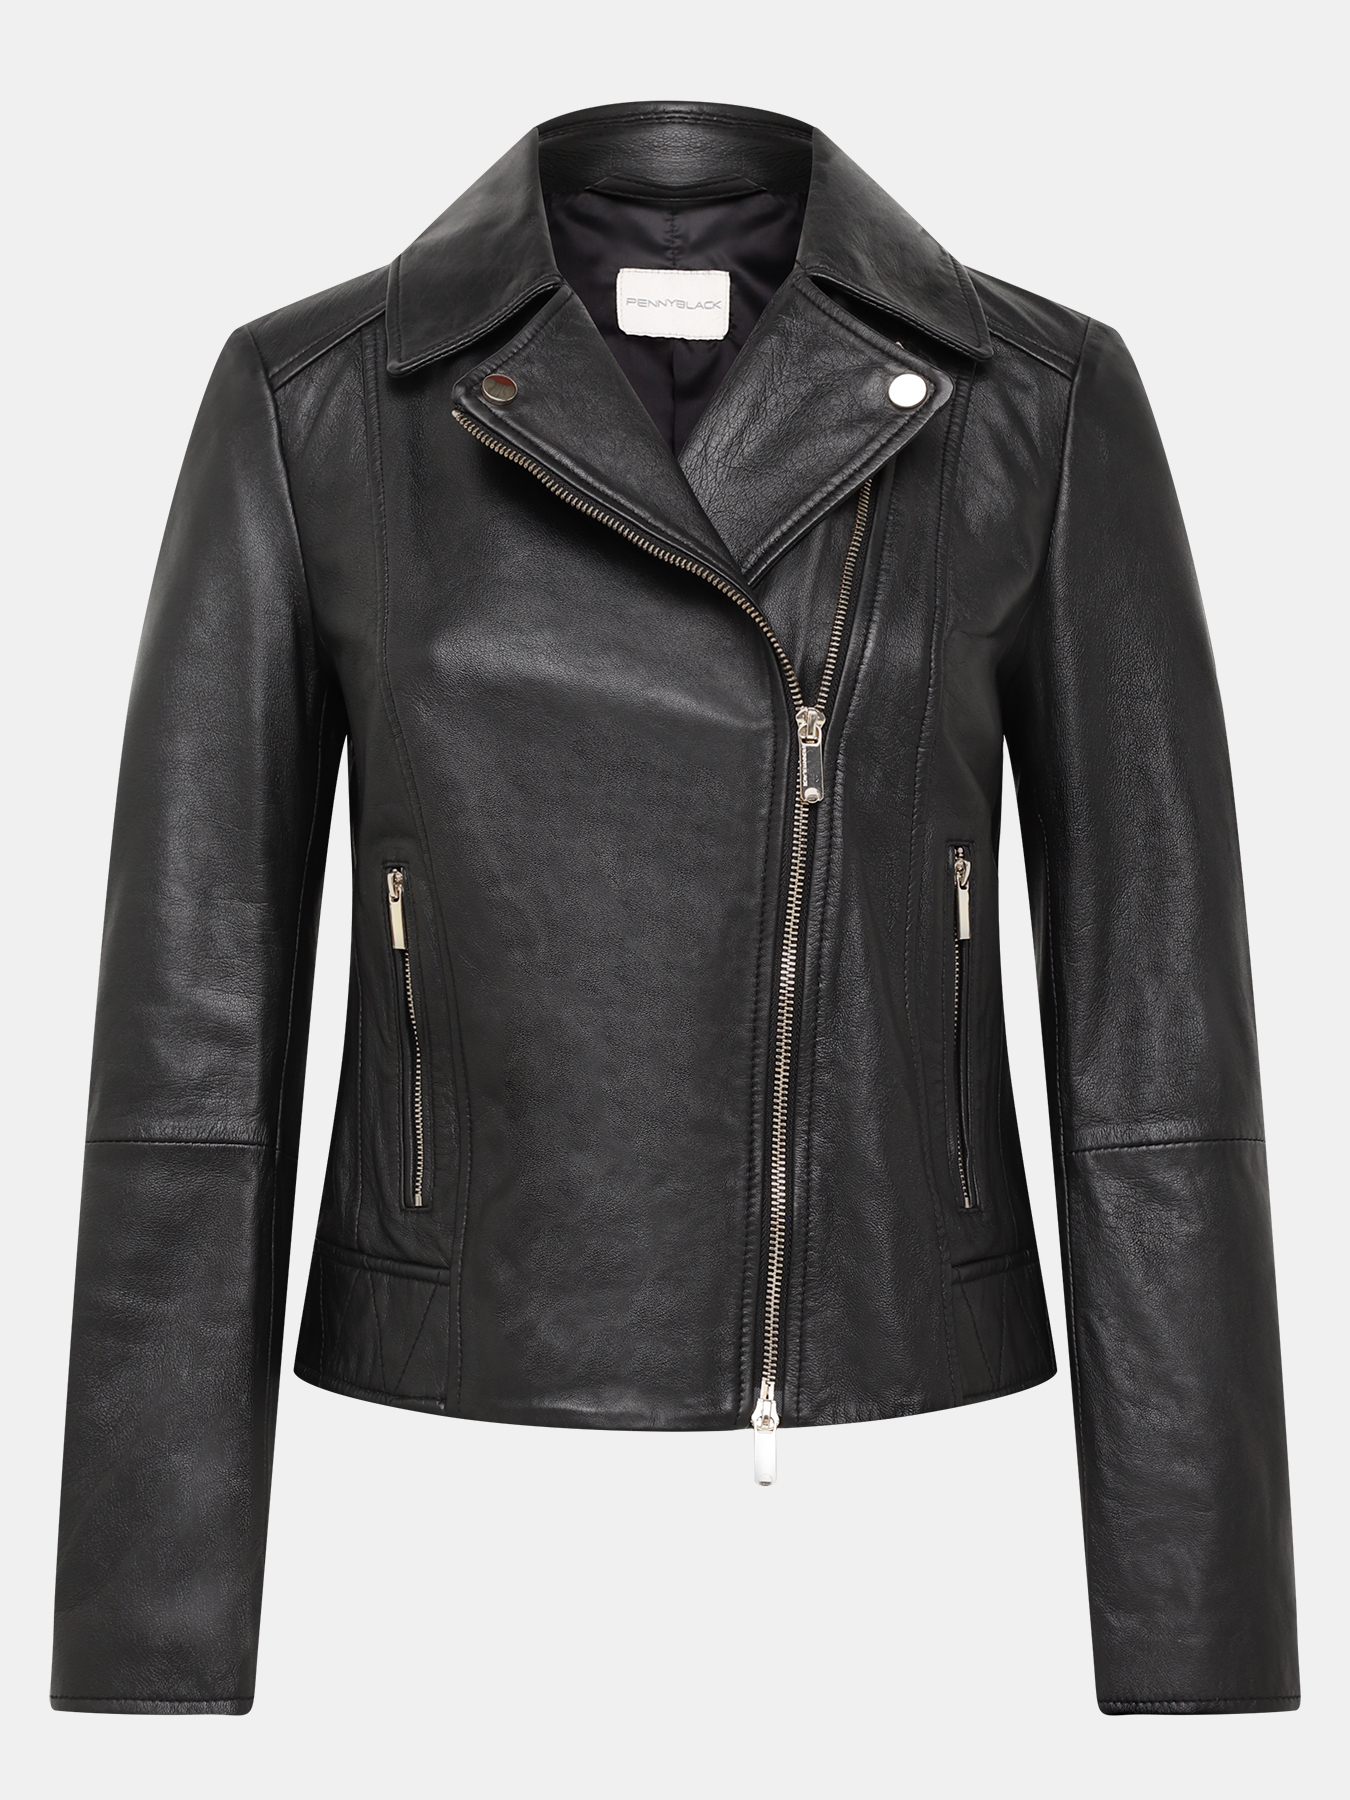 Кожаная куртка Pennyblack 421362-022, цвет черный, размер 44 - фото 1